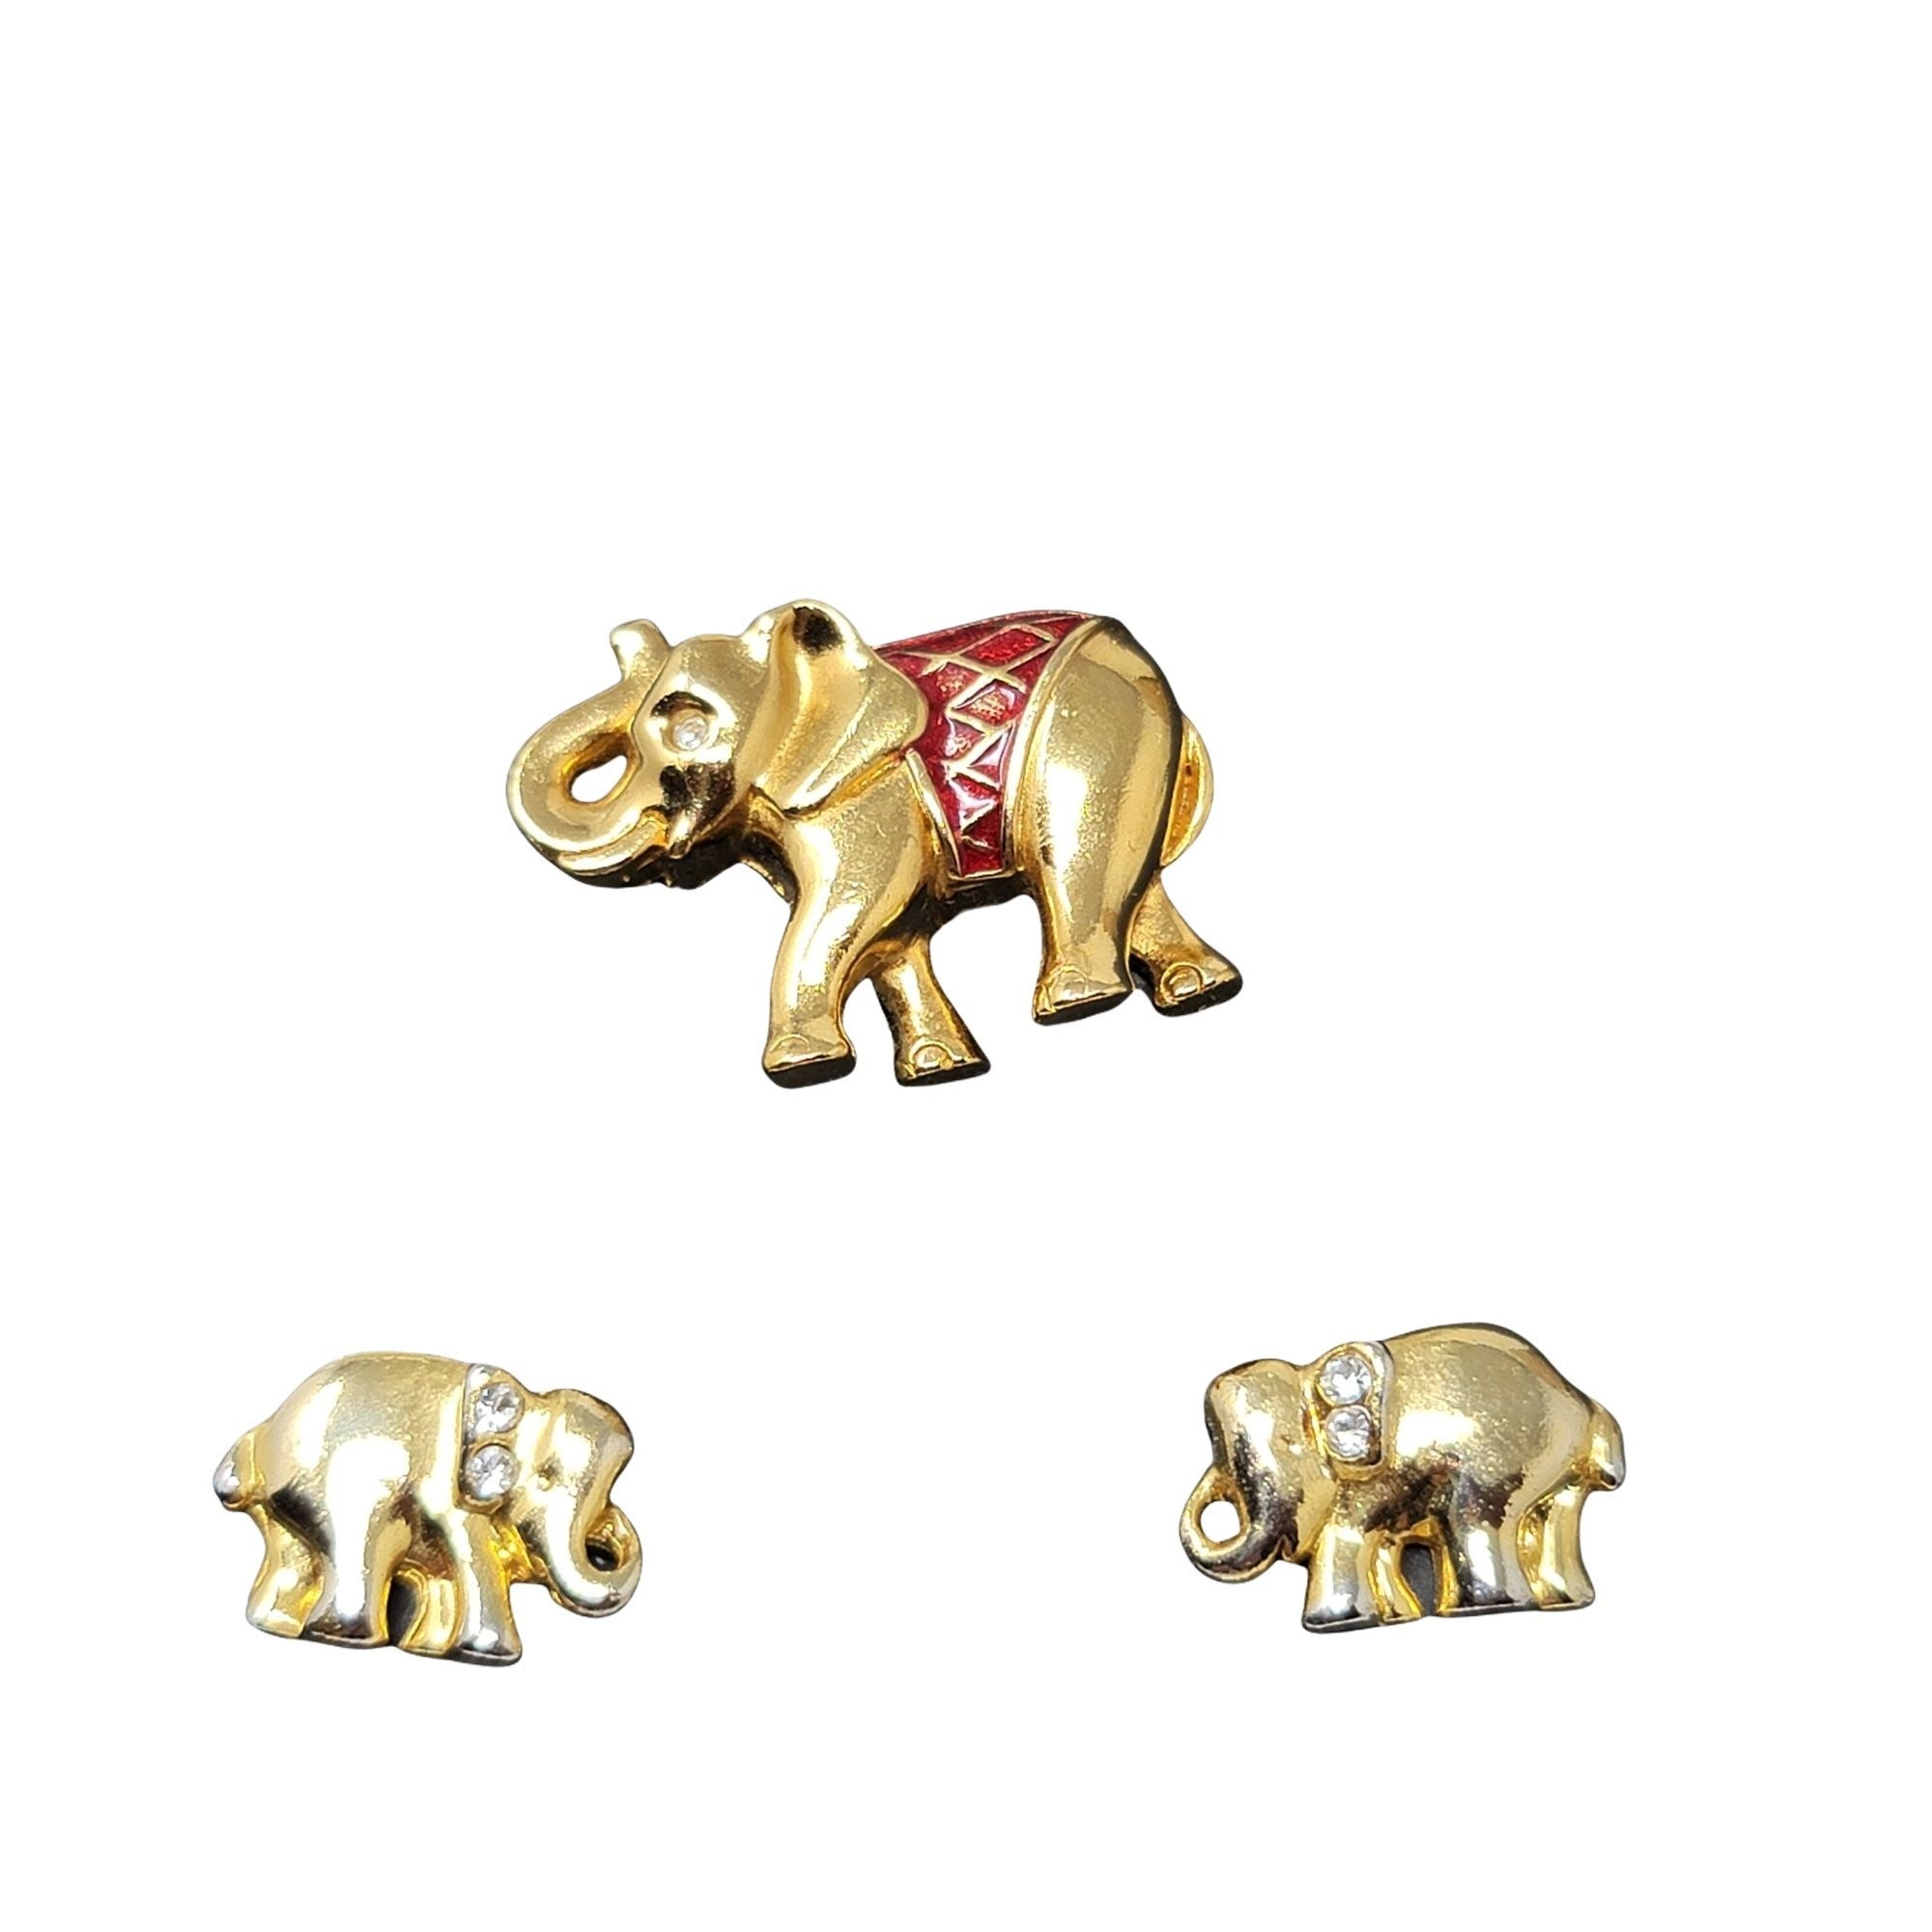 Elephant w/ Rhinestones Pin Brooch & Earring Set Goldtone SWEET